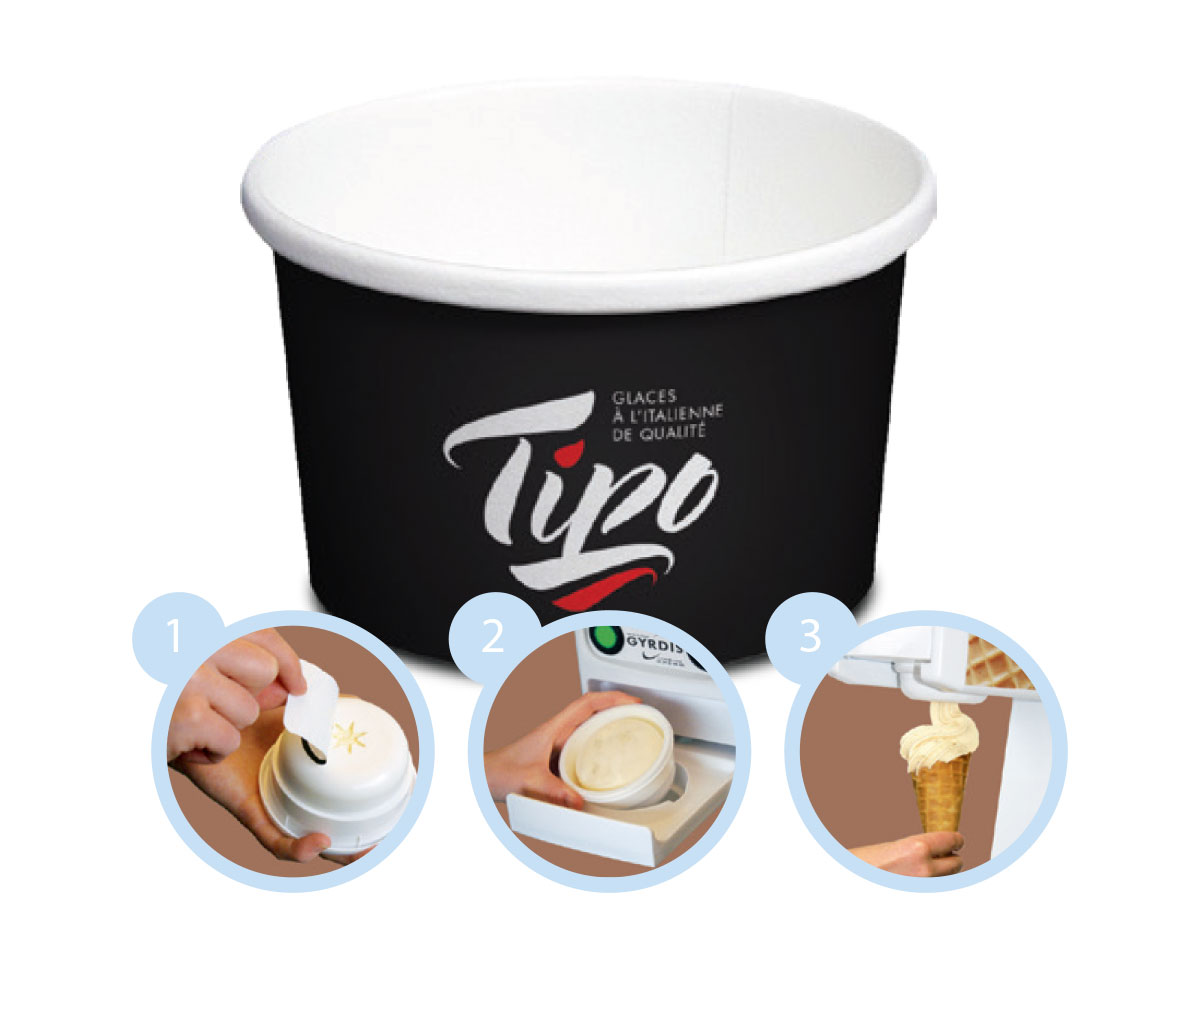 Tipo Soft-Serve Ice Creams – Gyrdis